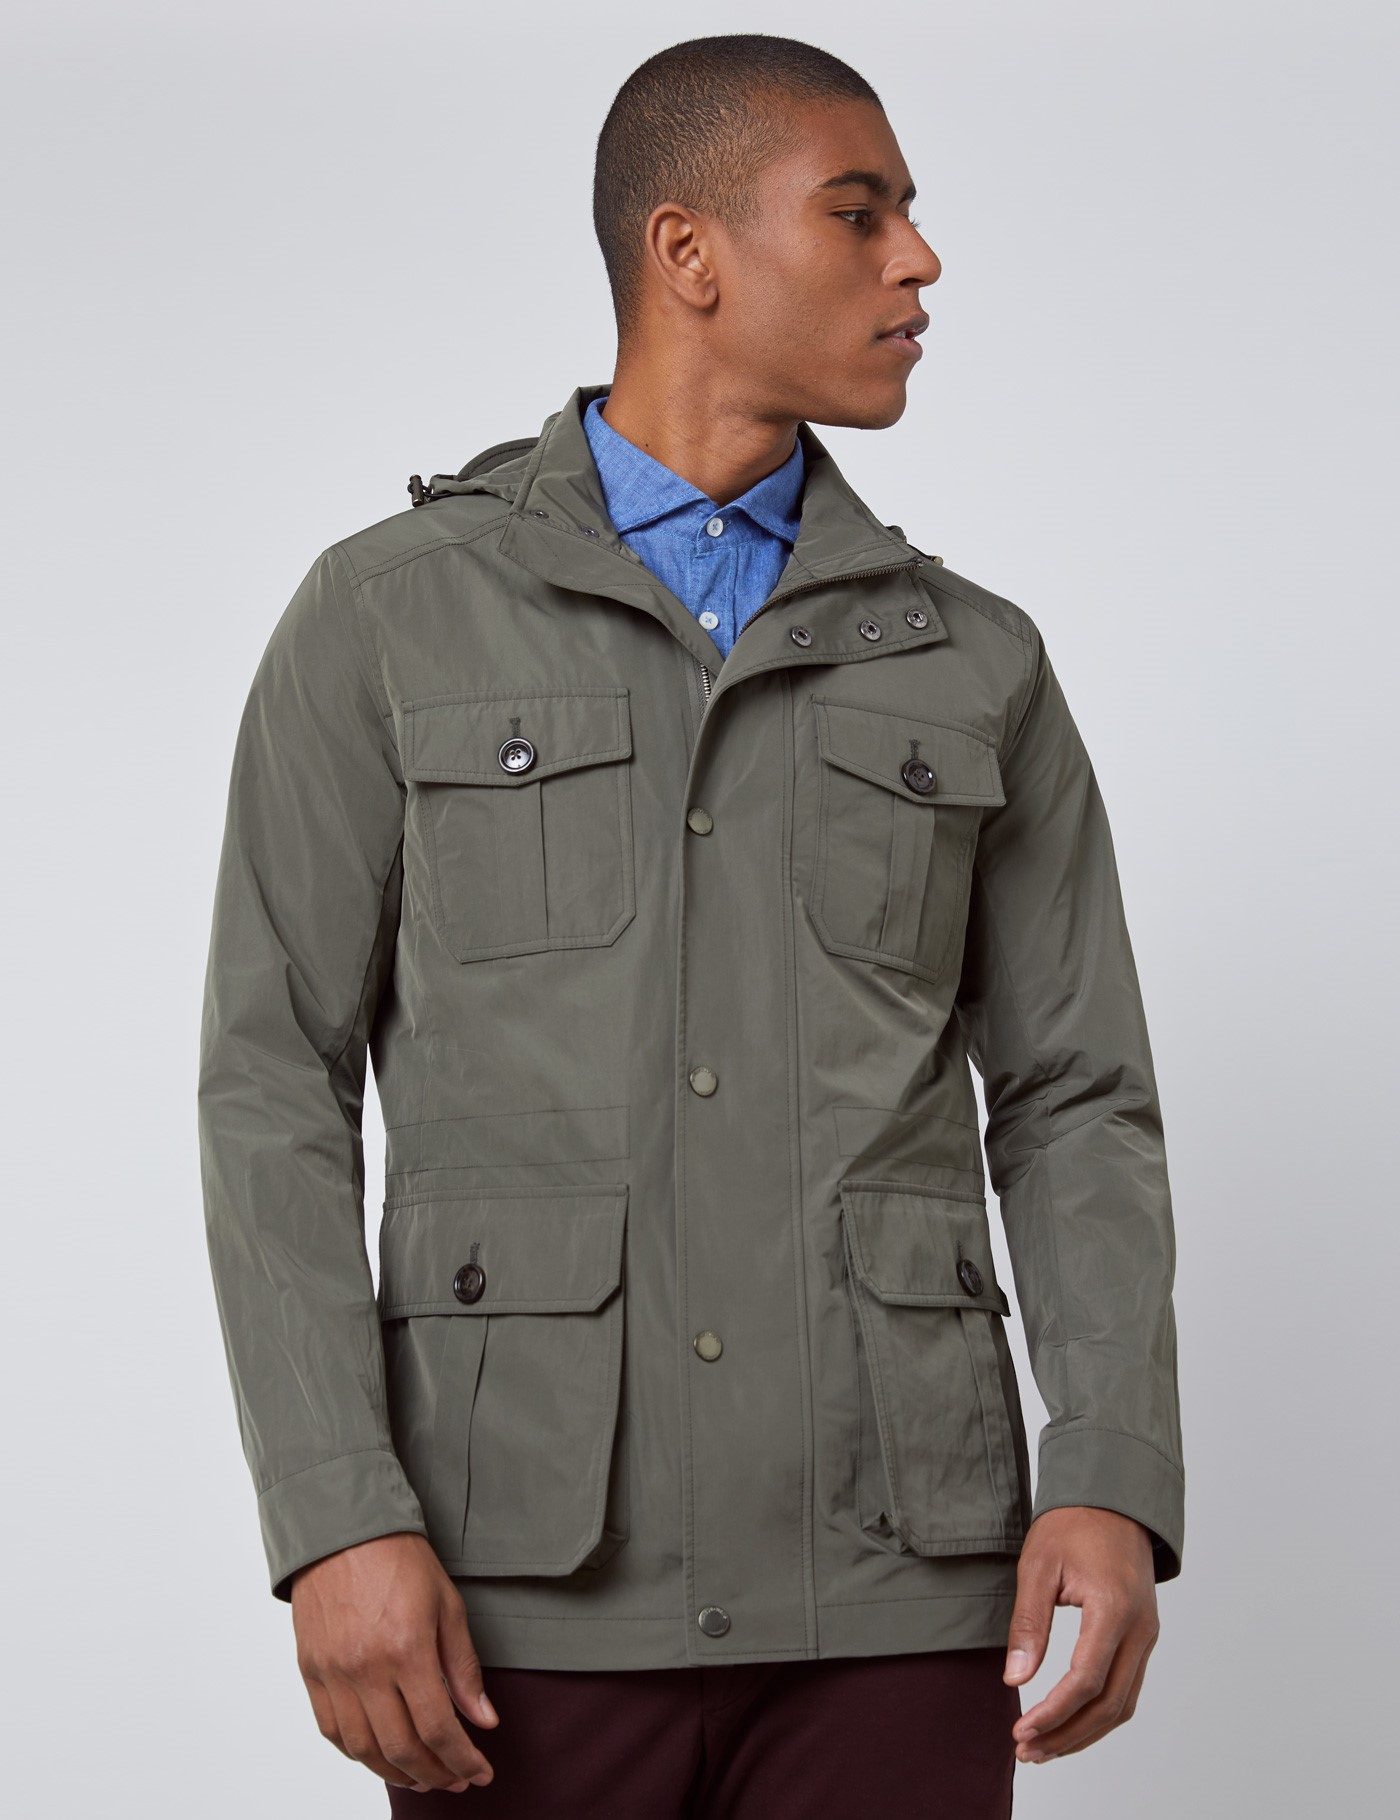 Weather Resistant Menâs Field Jacket with Removable Hood in Green| Hawes & Curtis | USA